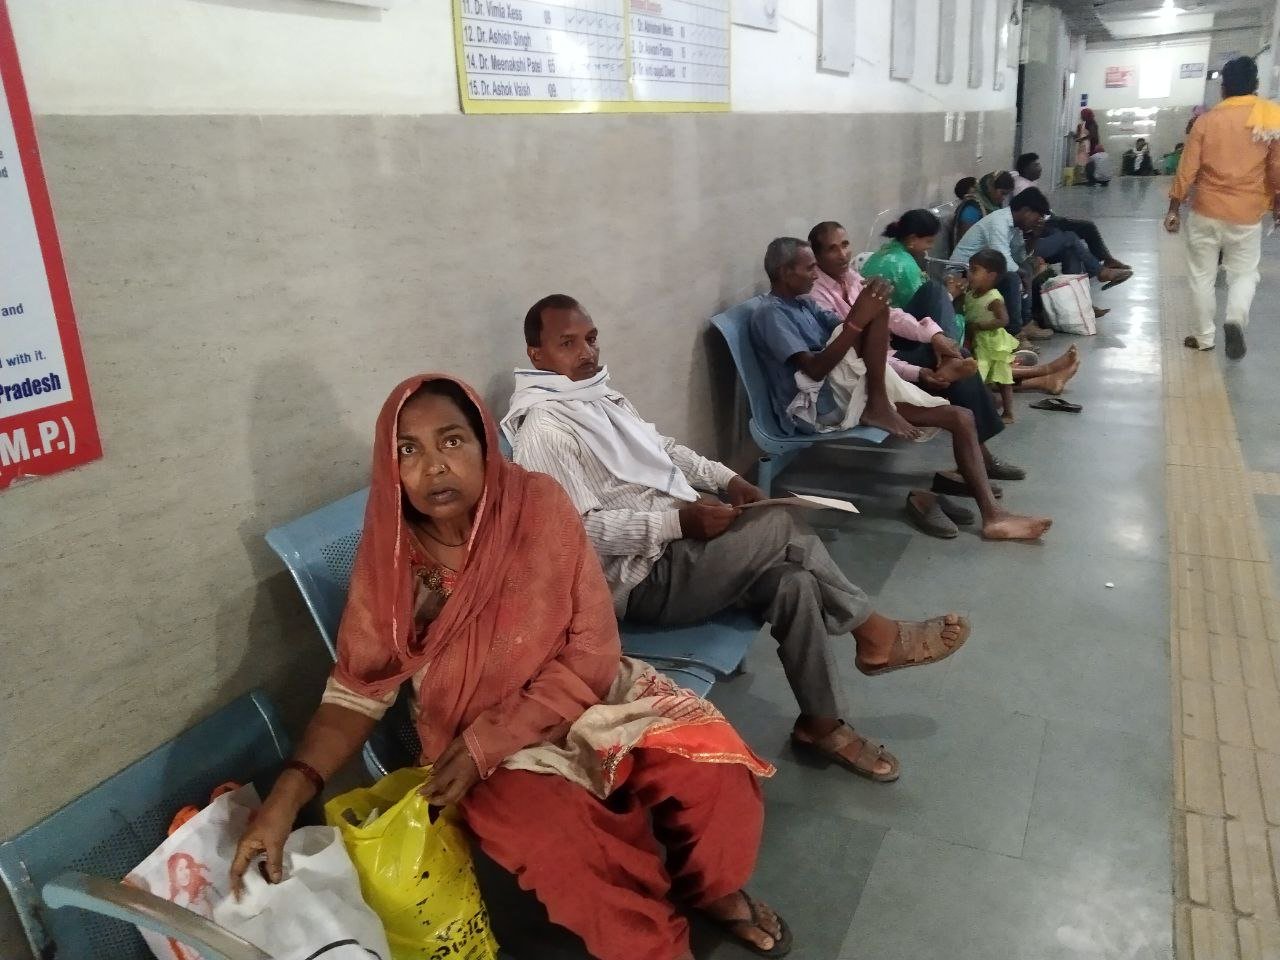 Nagpur News: मध्य भारत के रोगियों को बड़ा झटका! NMRDA ने रद्द किया कैंसर इंस्टिट्यूट का प्रोजेक्ट